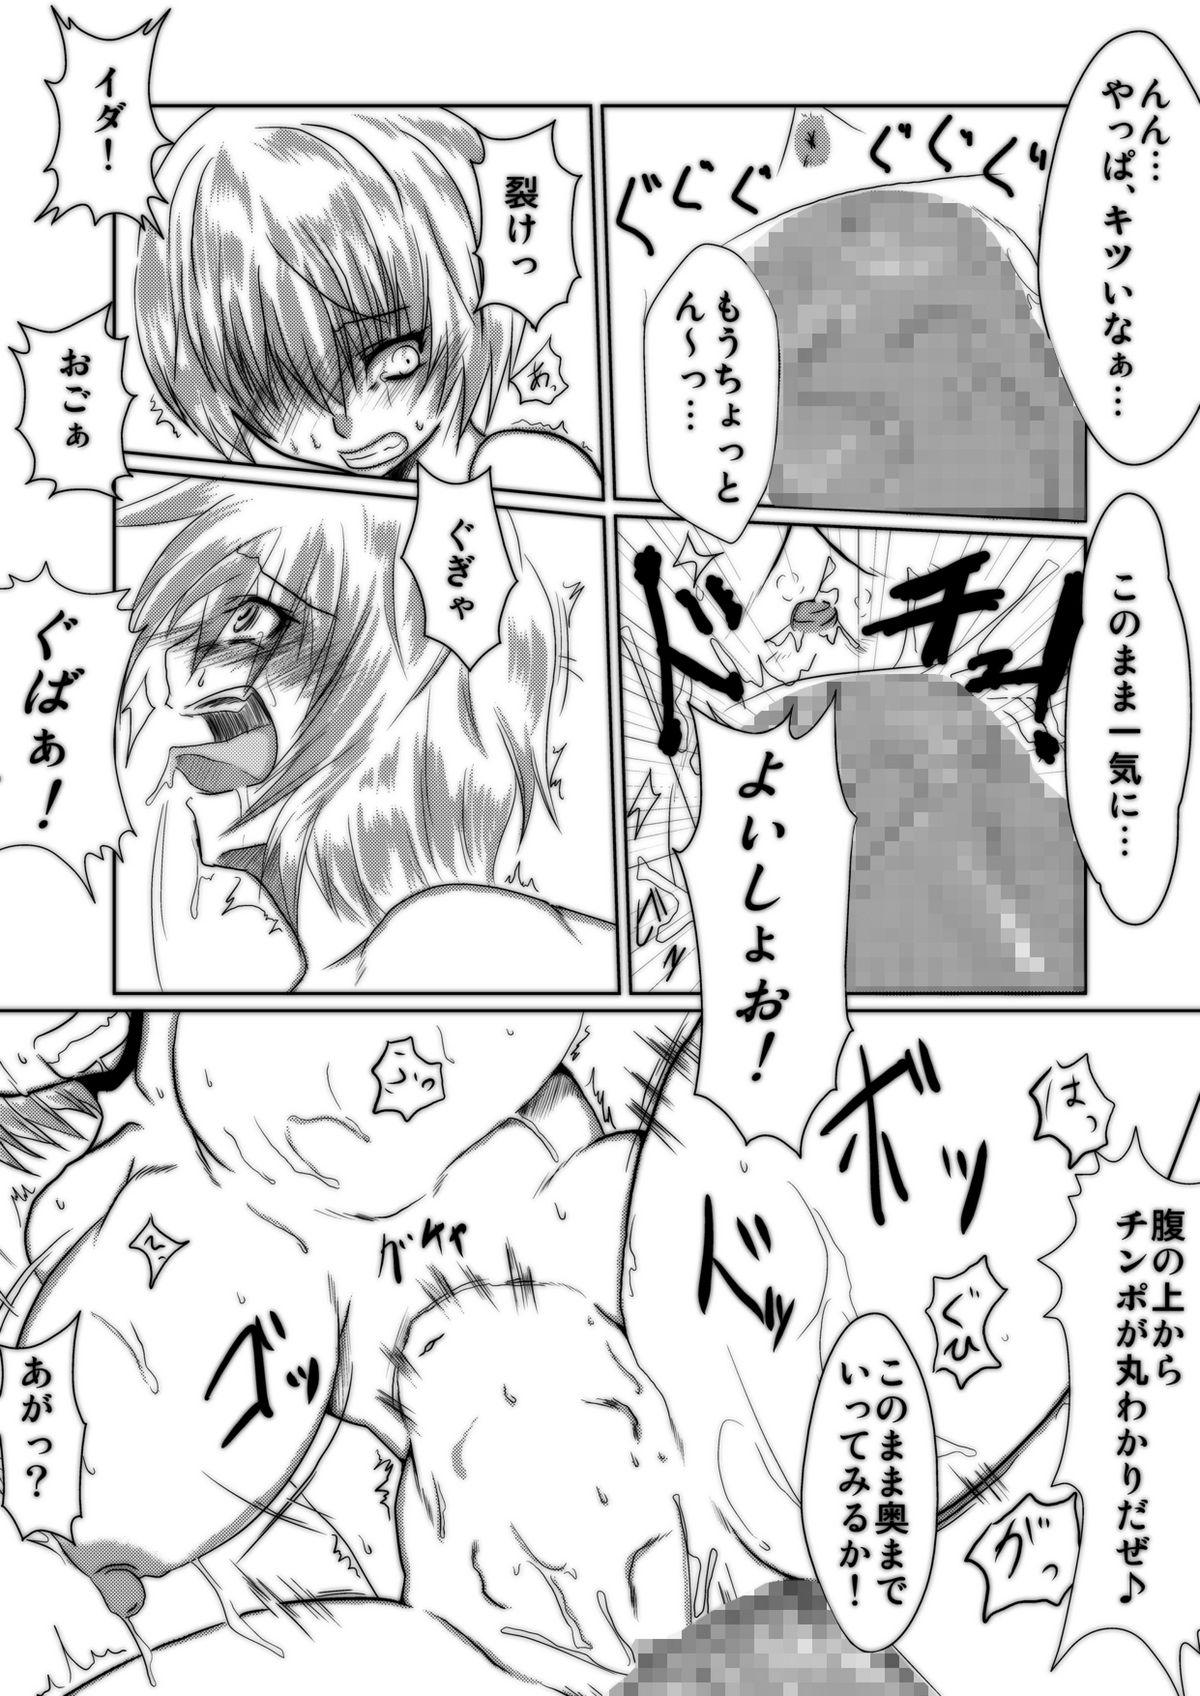 Face Bakunyuna Ayanami-san to no sei katsu! | Sexual activity with Rei's breasts! - Neon genesis evangelion Facial - Page 9